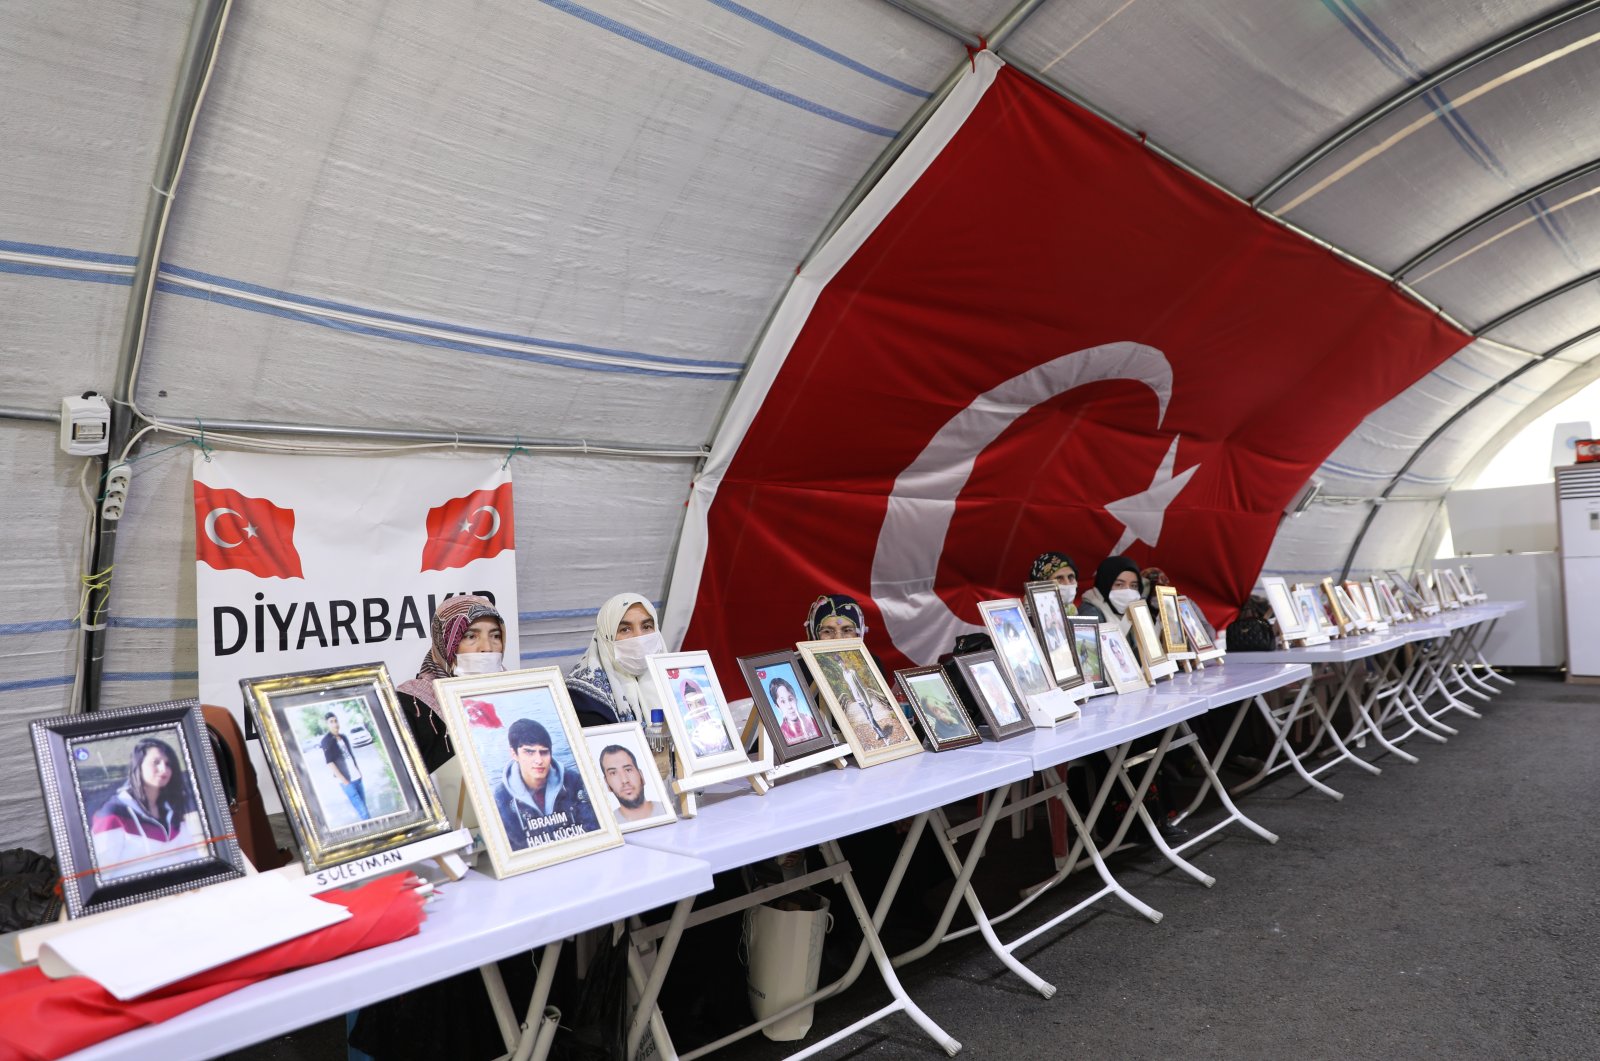 861 hari dan terus bertambah: Protes anti-PKK terus berkembang di Turki Tenggara